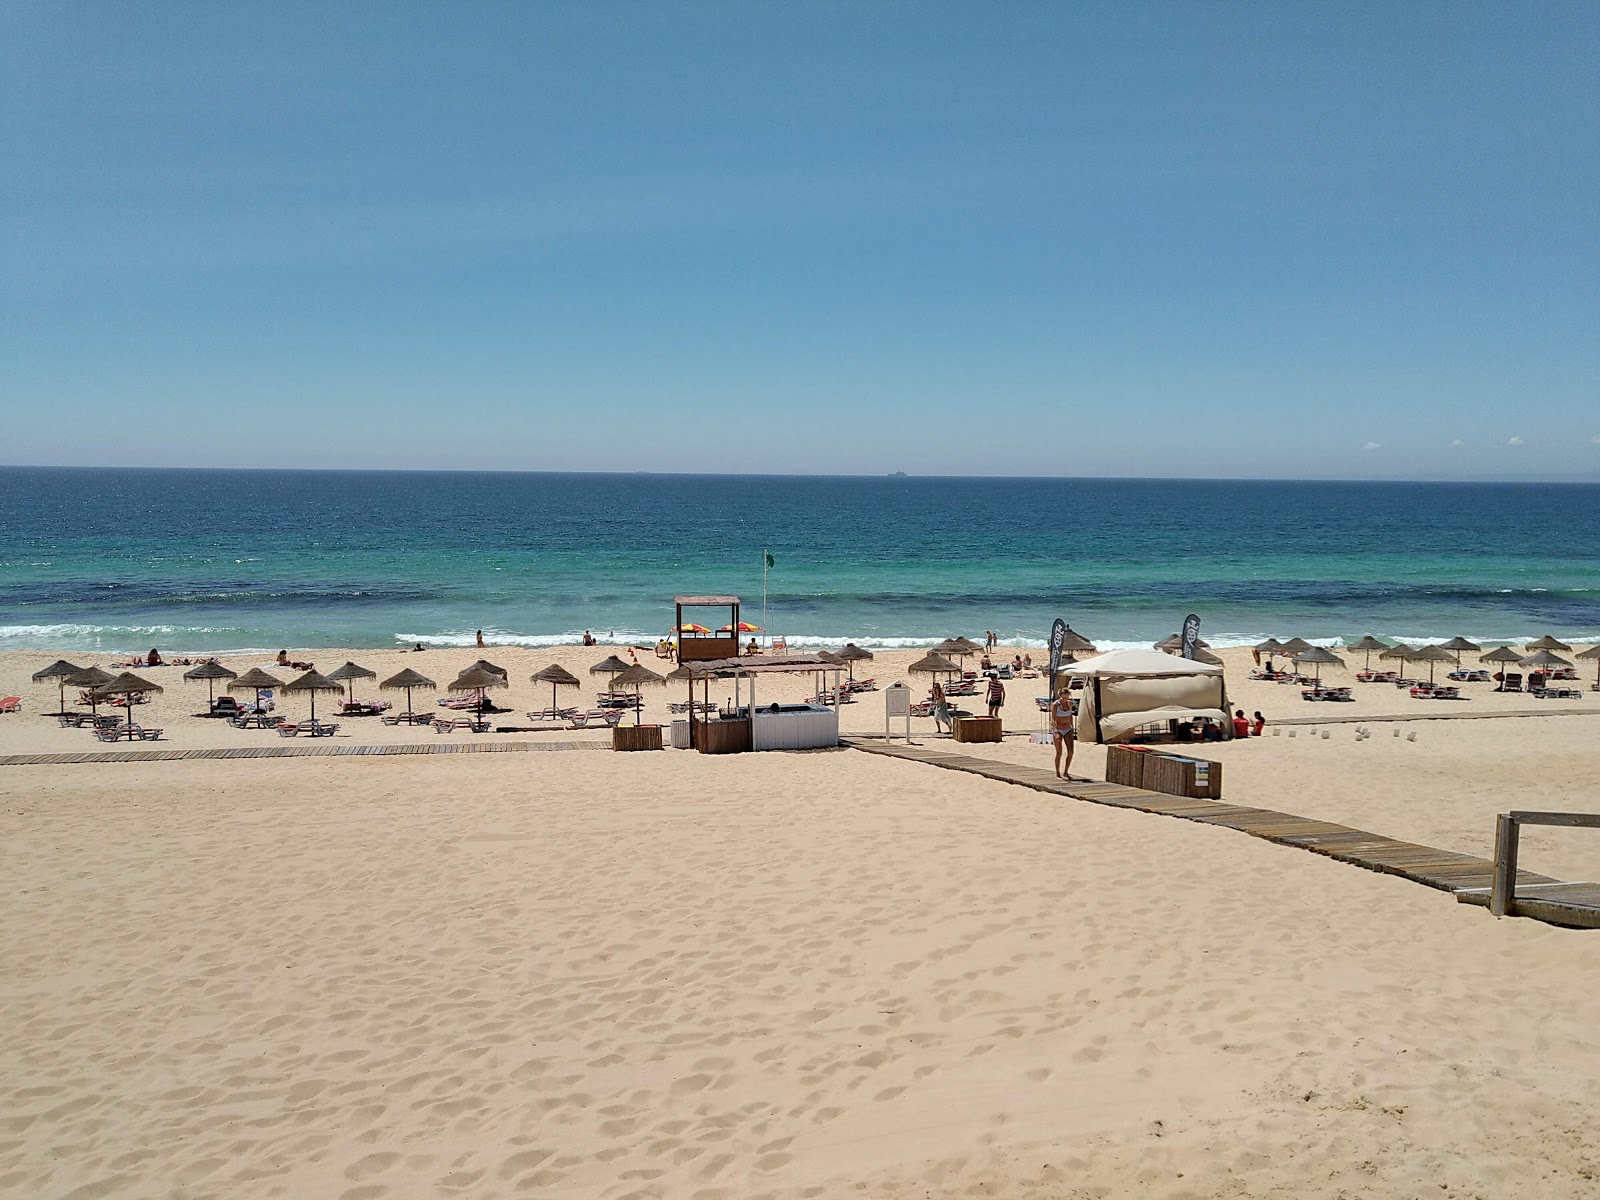 Fotografie cu Praia do Pego - locul popular printre cunoscătorii de relaxare